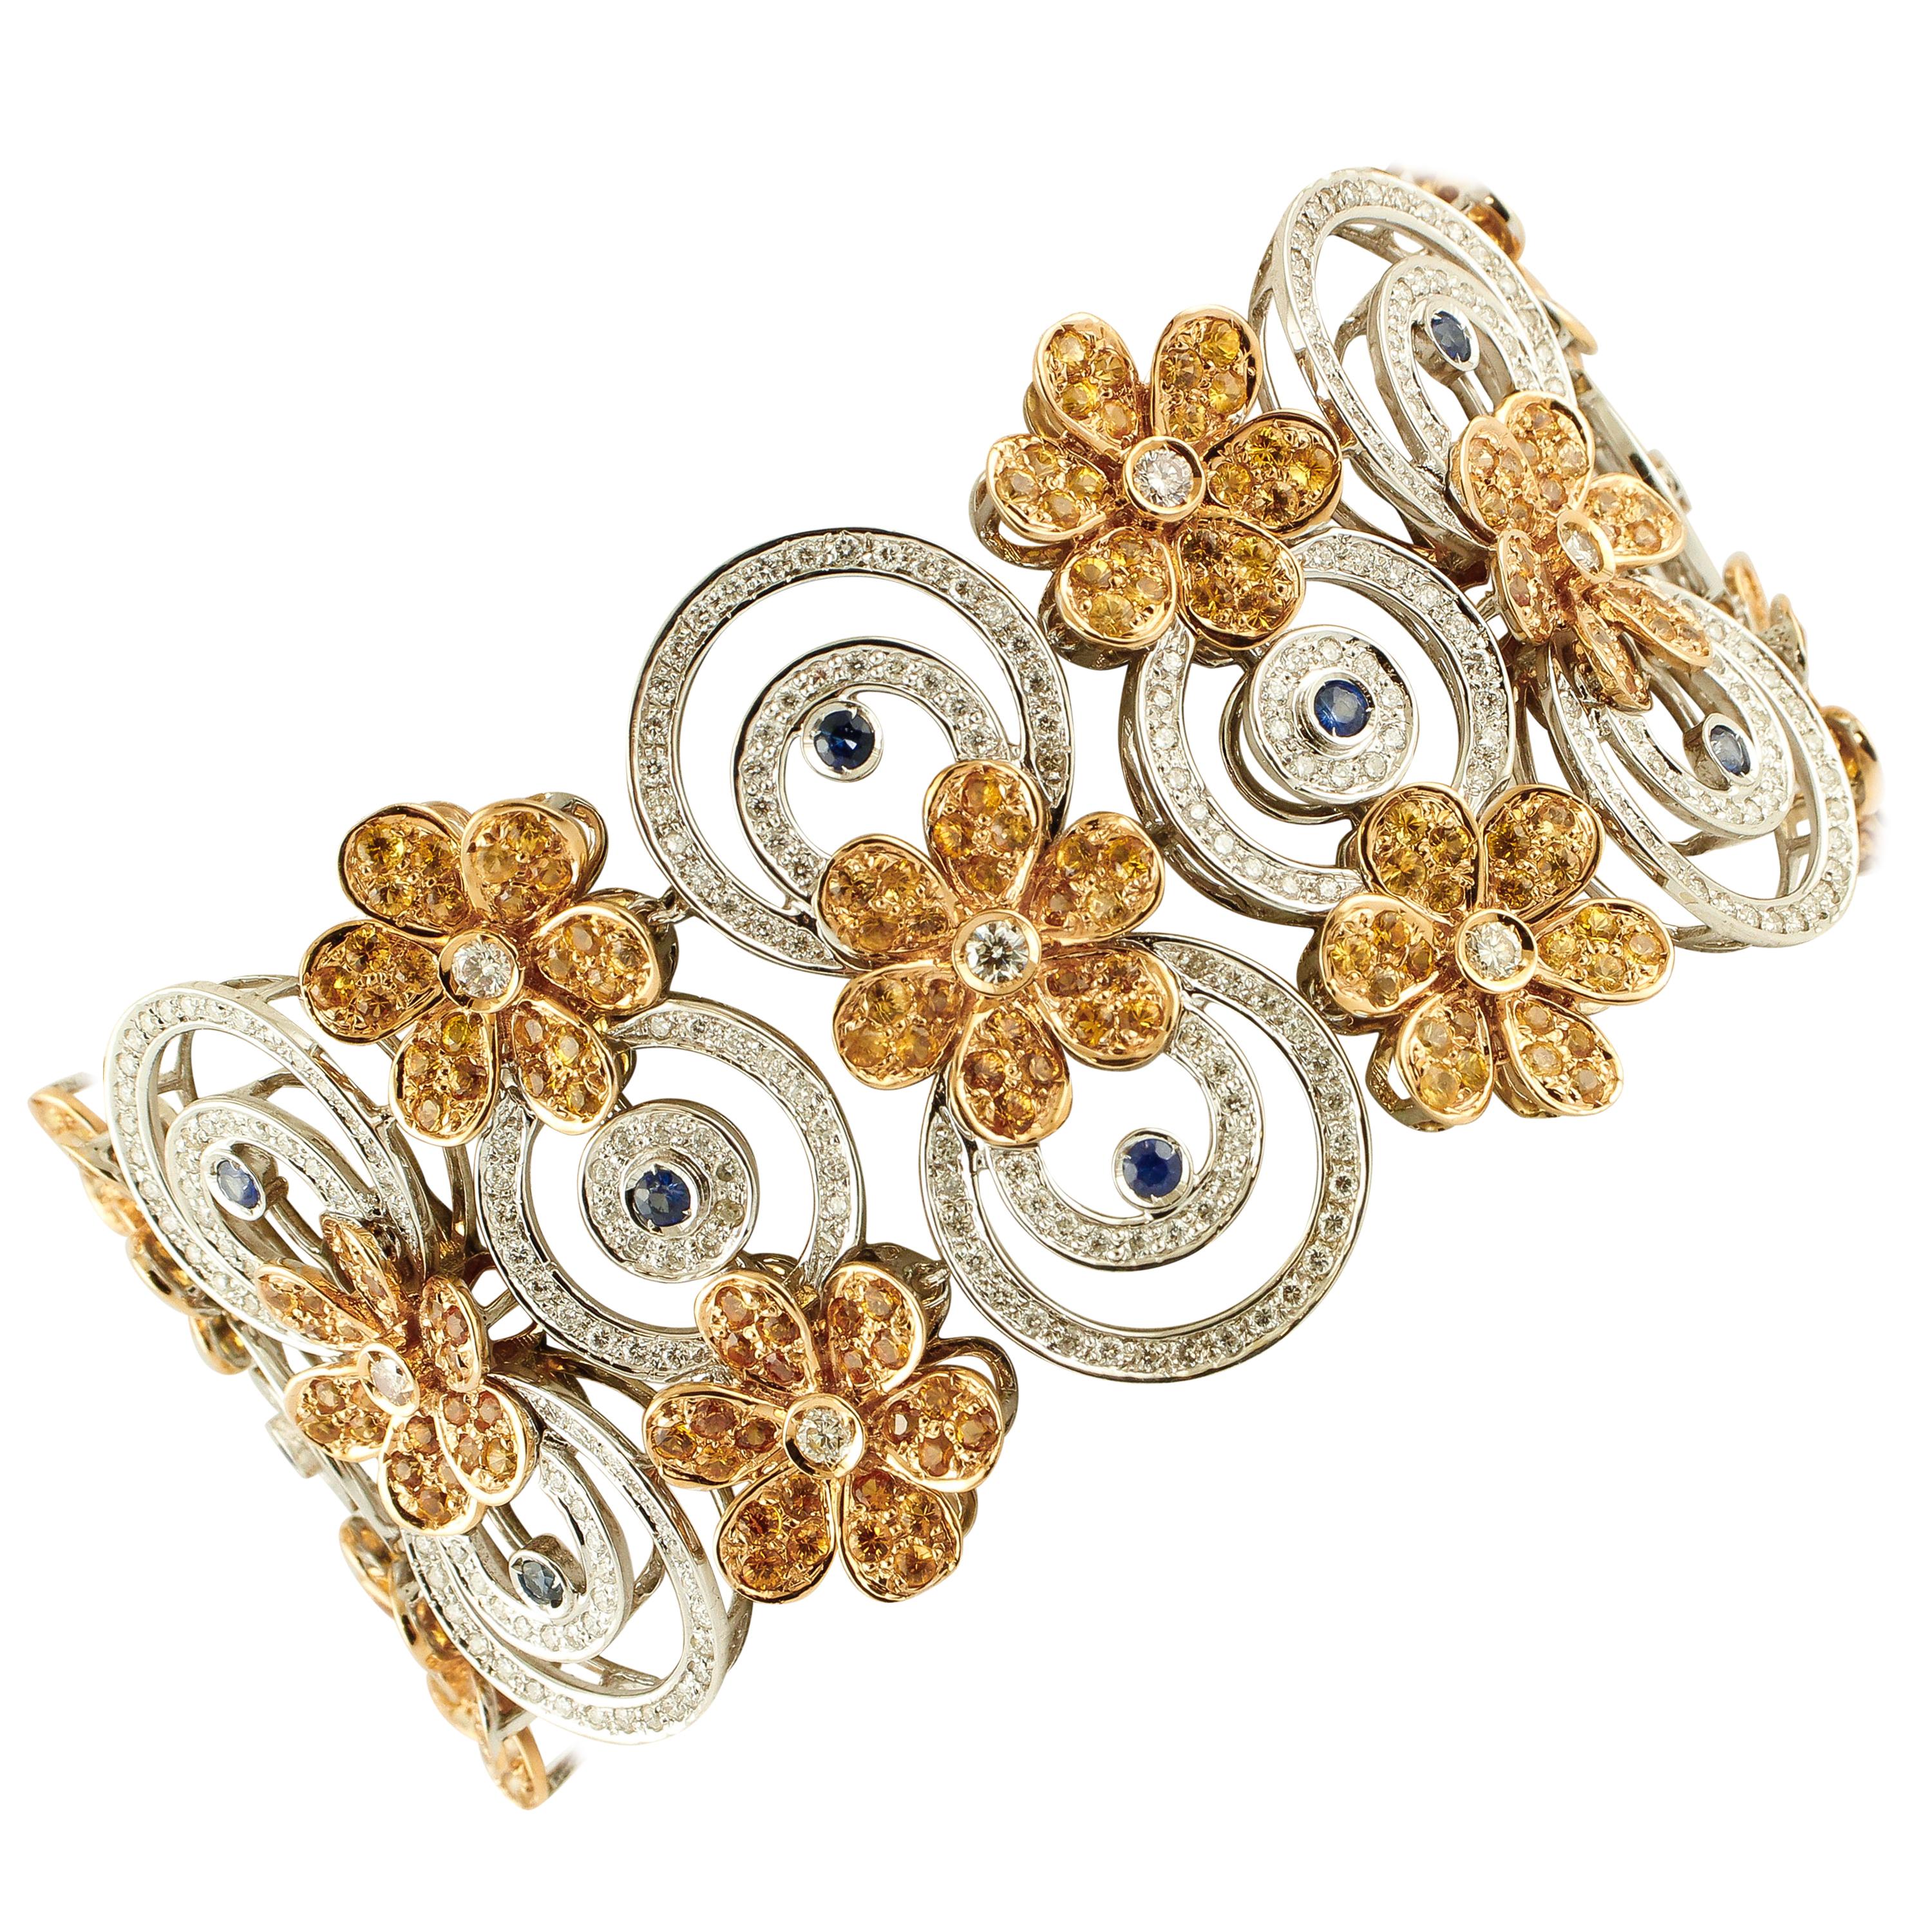 Armband mit Diamanten, blauen und gelben Saphiren, Weiß- und Roségold-Blumen und Kreisen